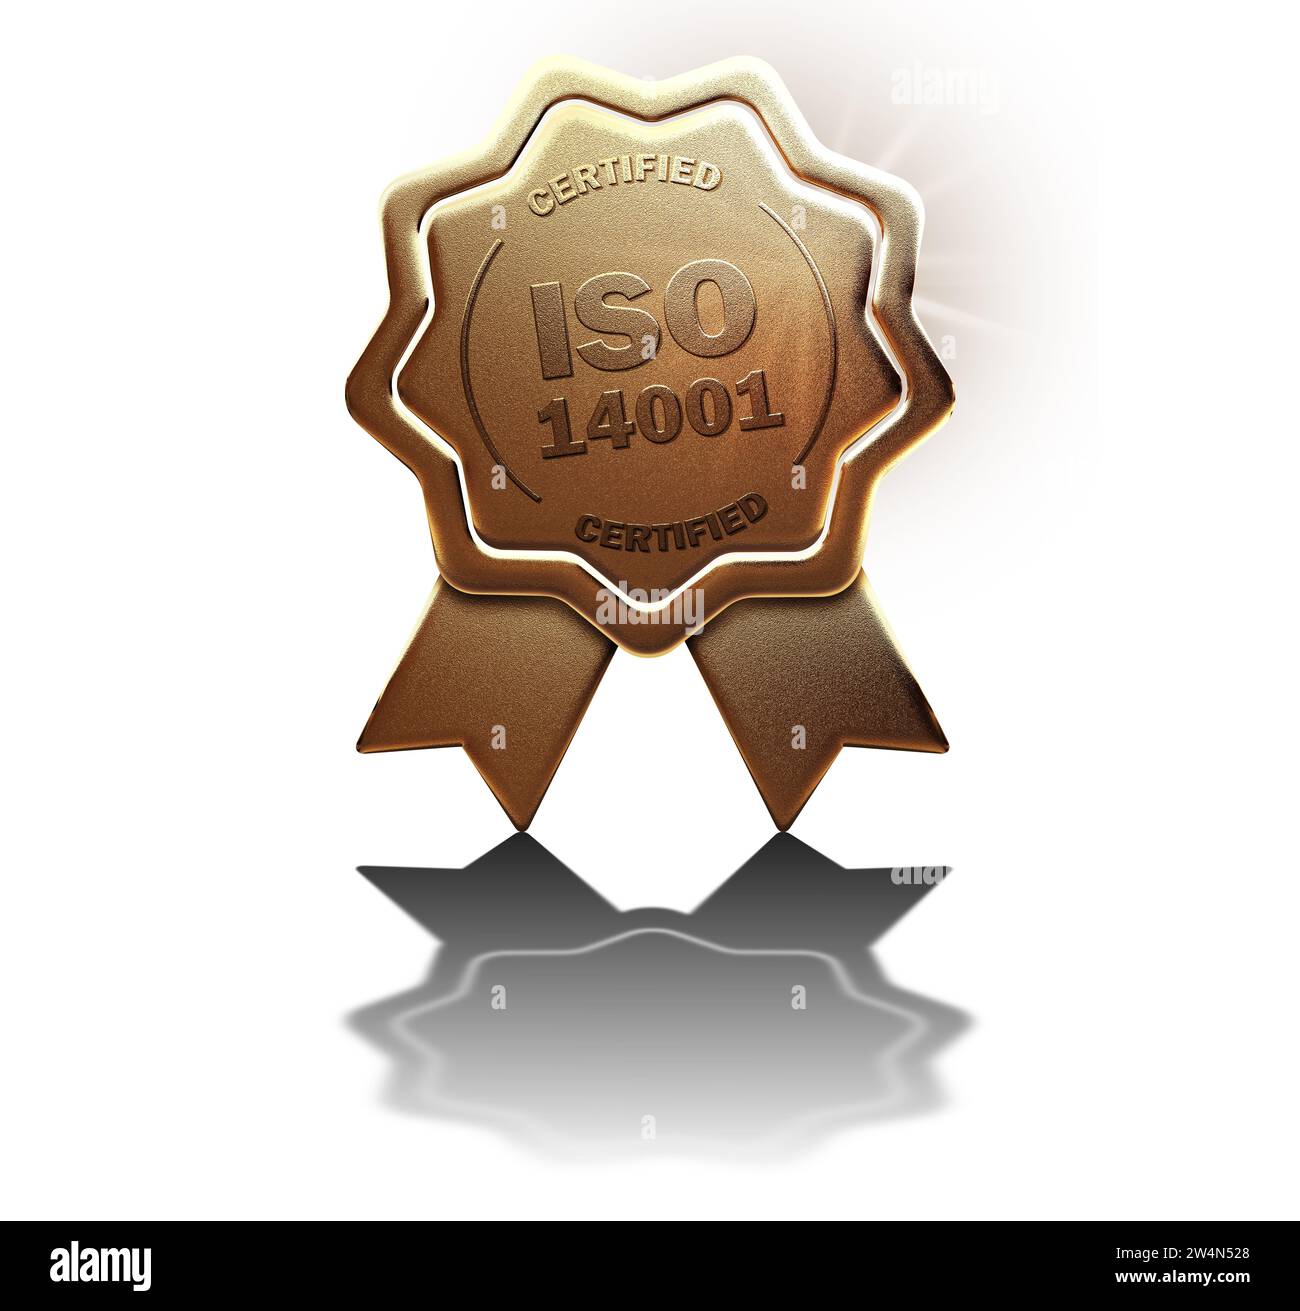 LABEL DE QUALITÉ INTERNATIONAL ISO 14001 Banque D'Images